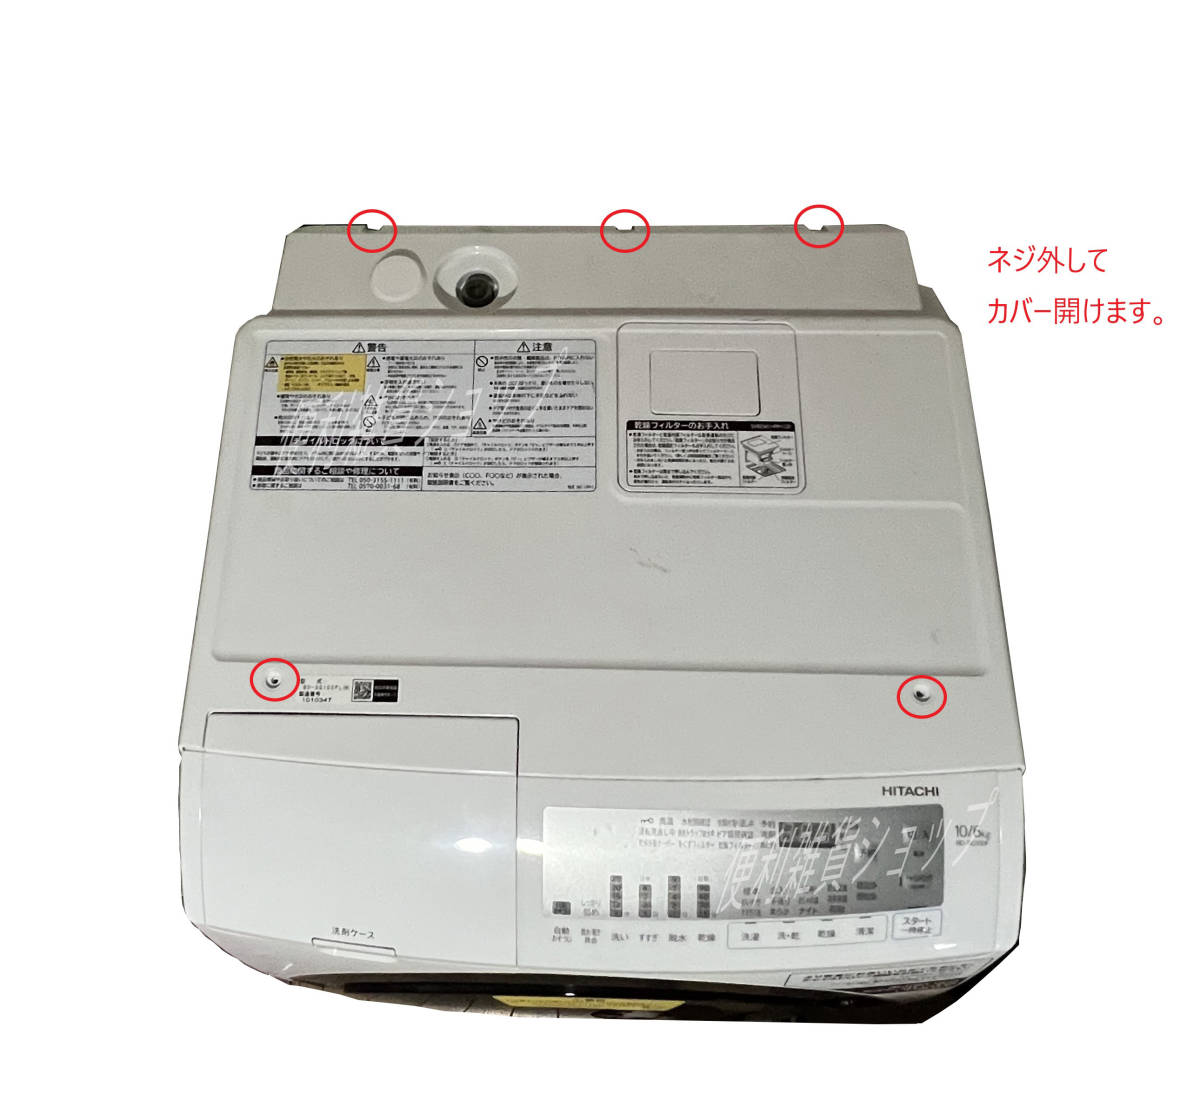 HITACHI ドラム式 洗濯乾燥機 BD-SG100FL エラー F19 DIY修理交換部品 メイン基板用冷却ファン NMB-MAT 2410EL-05W-M49 修理交換手順公開中_画像5